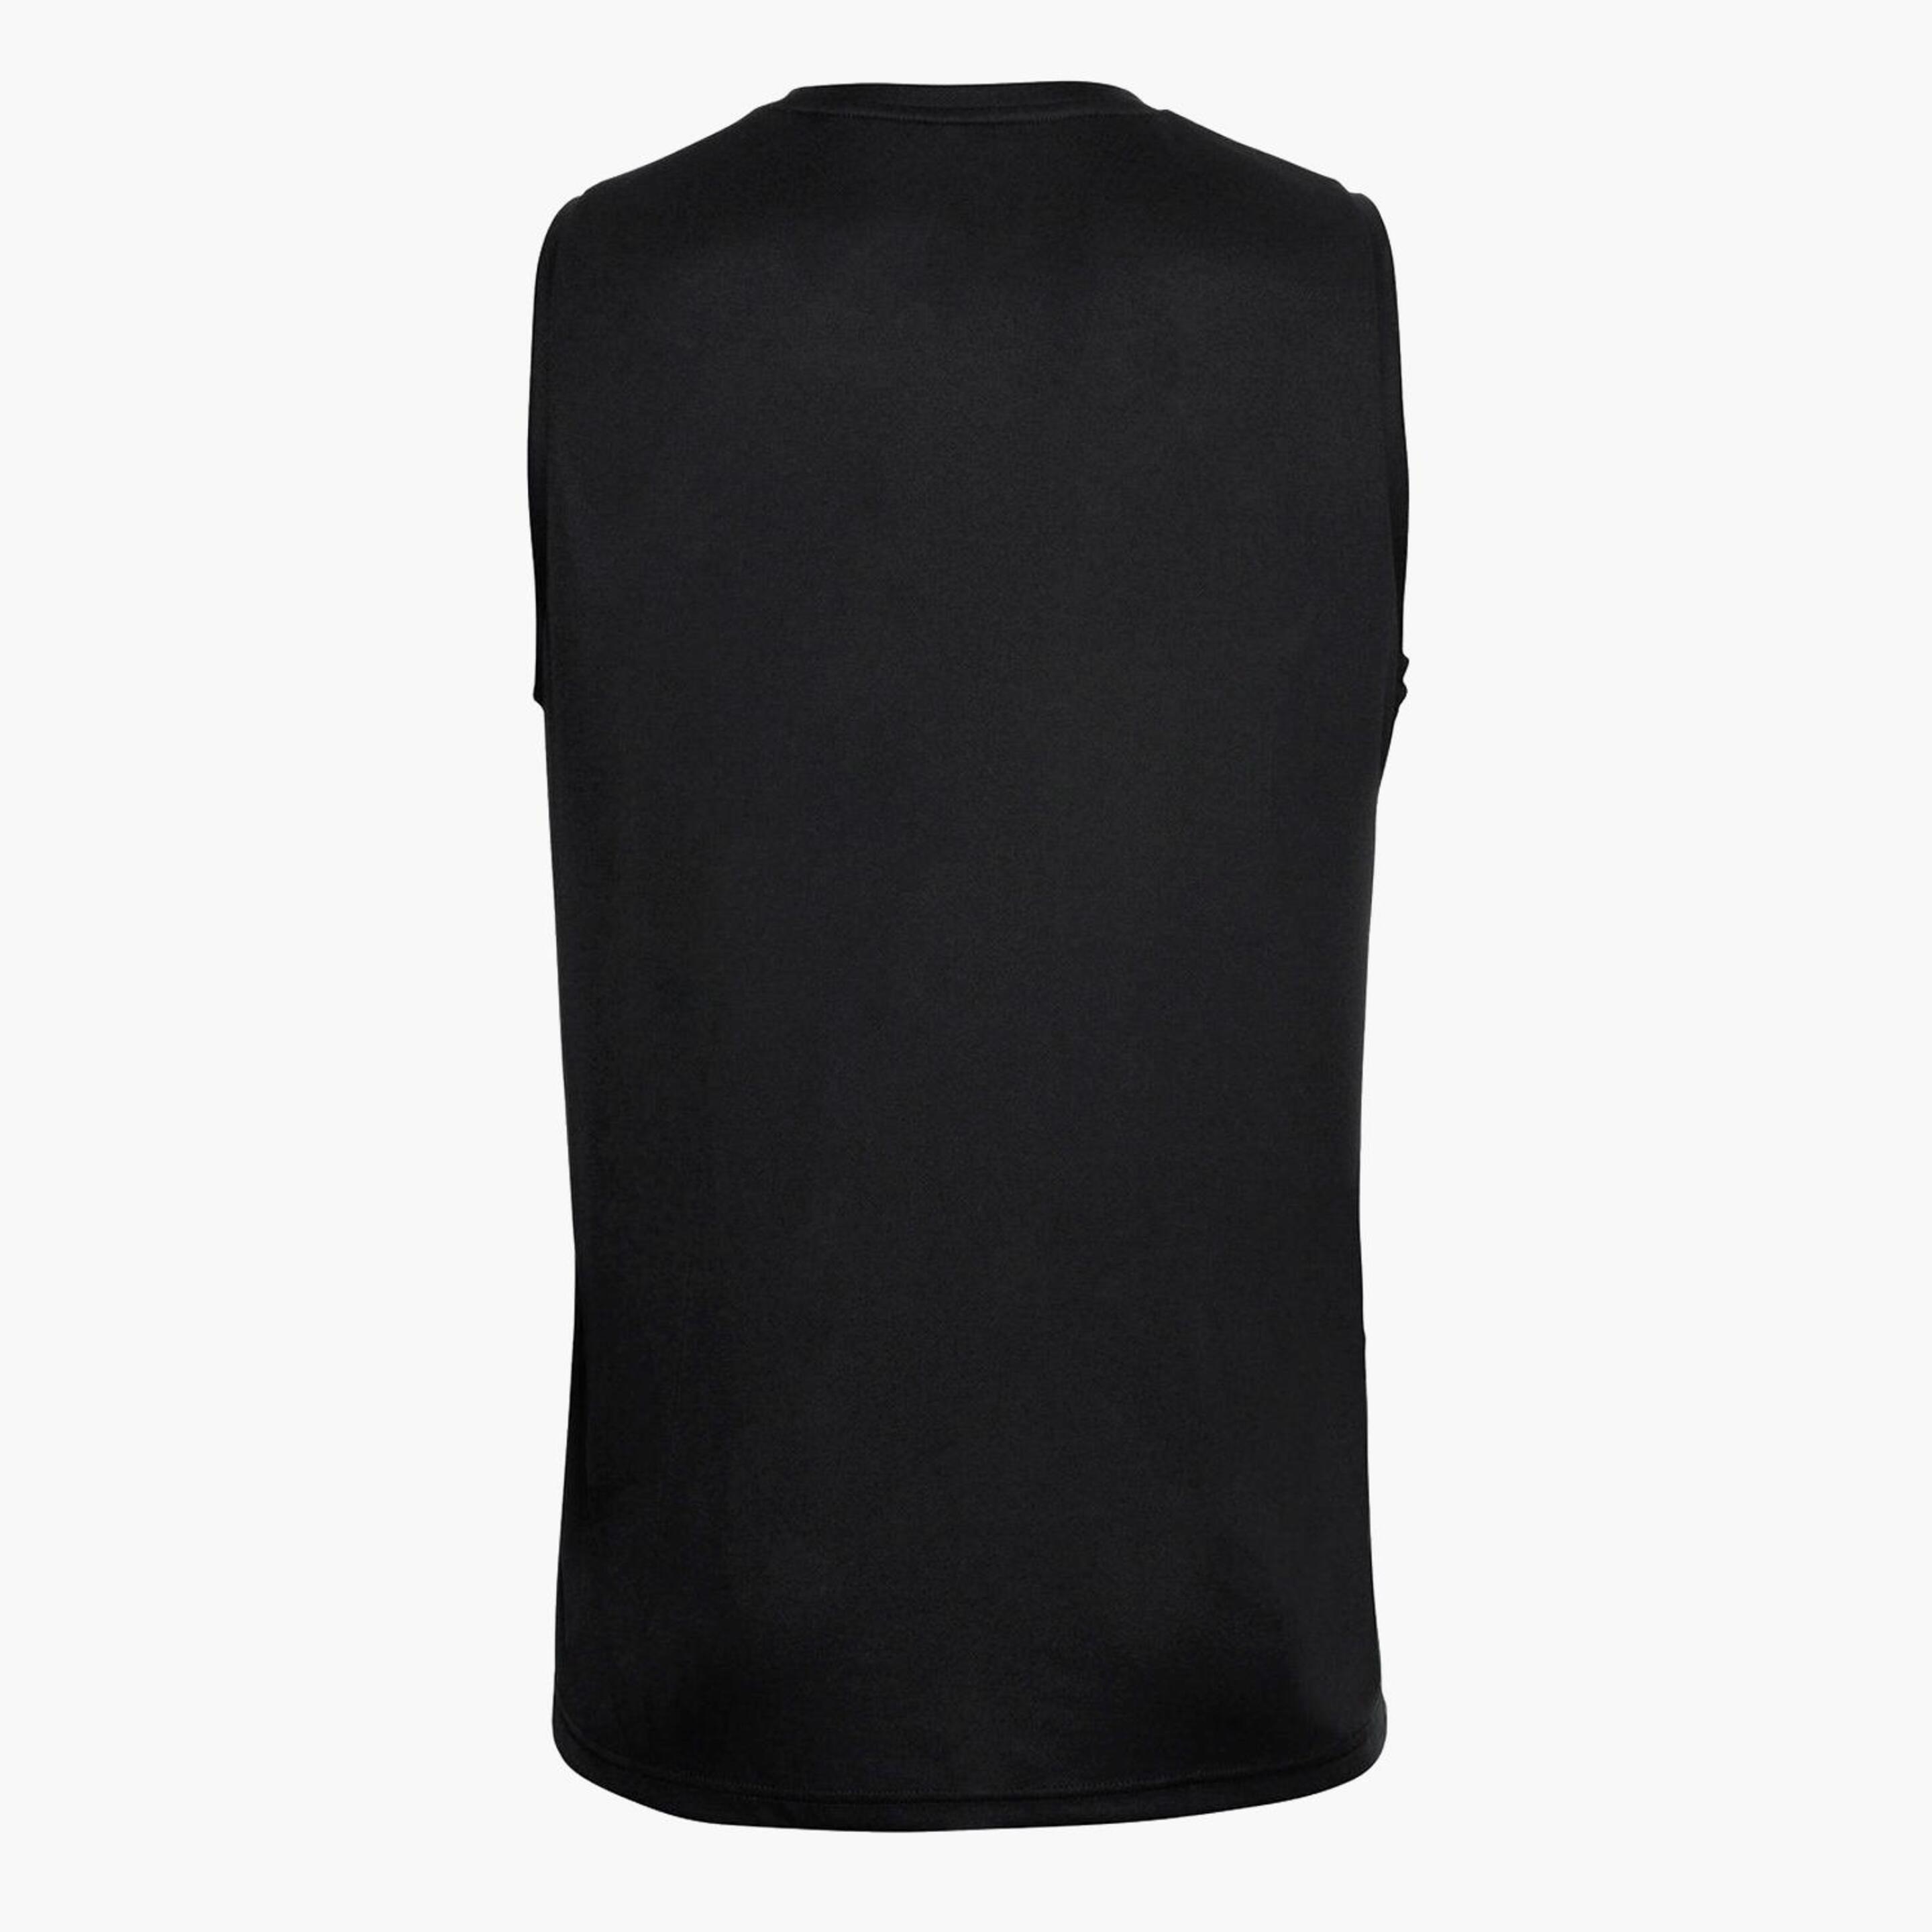 Odlo Essential - Negro - Camiseta Hombre